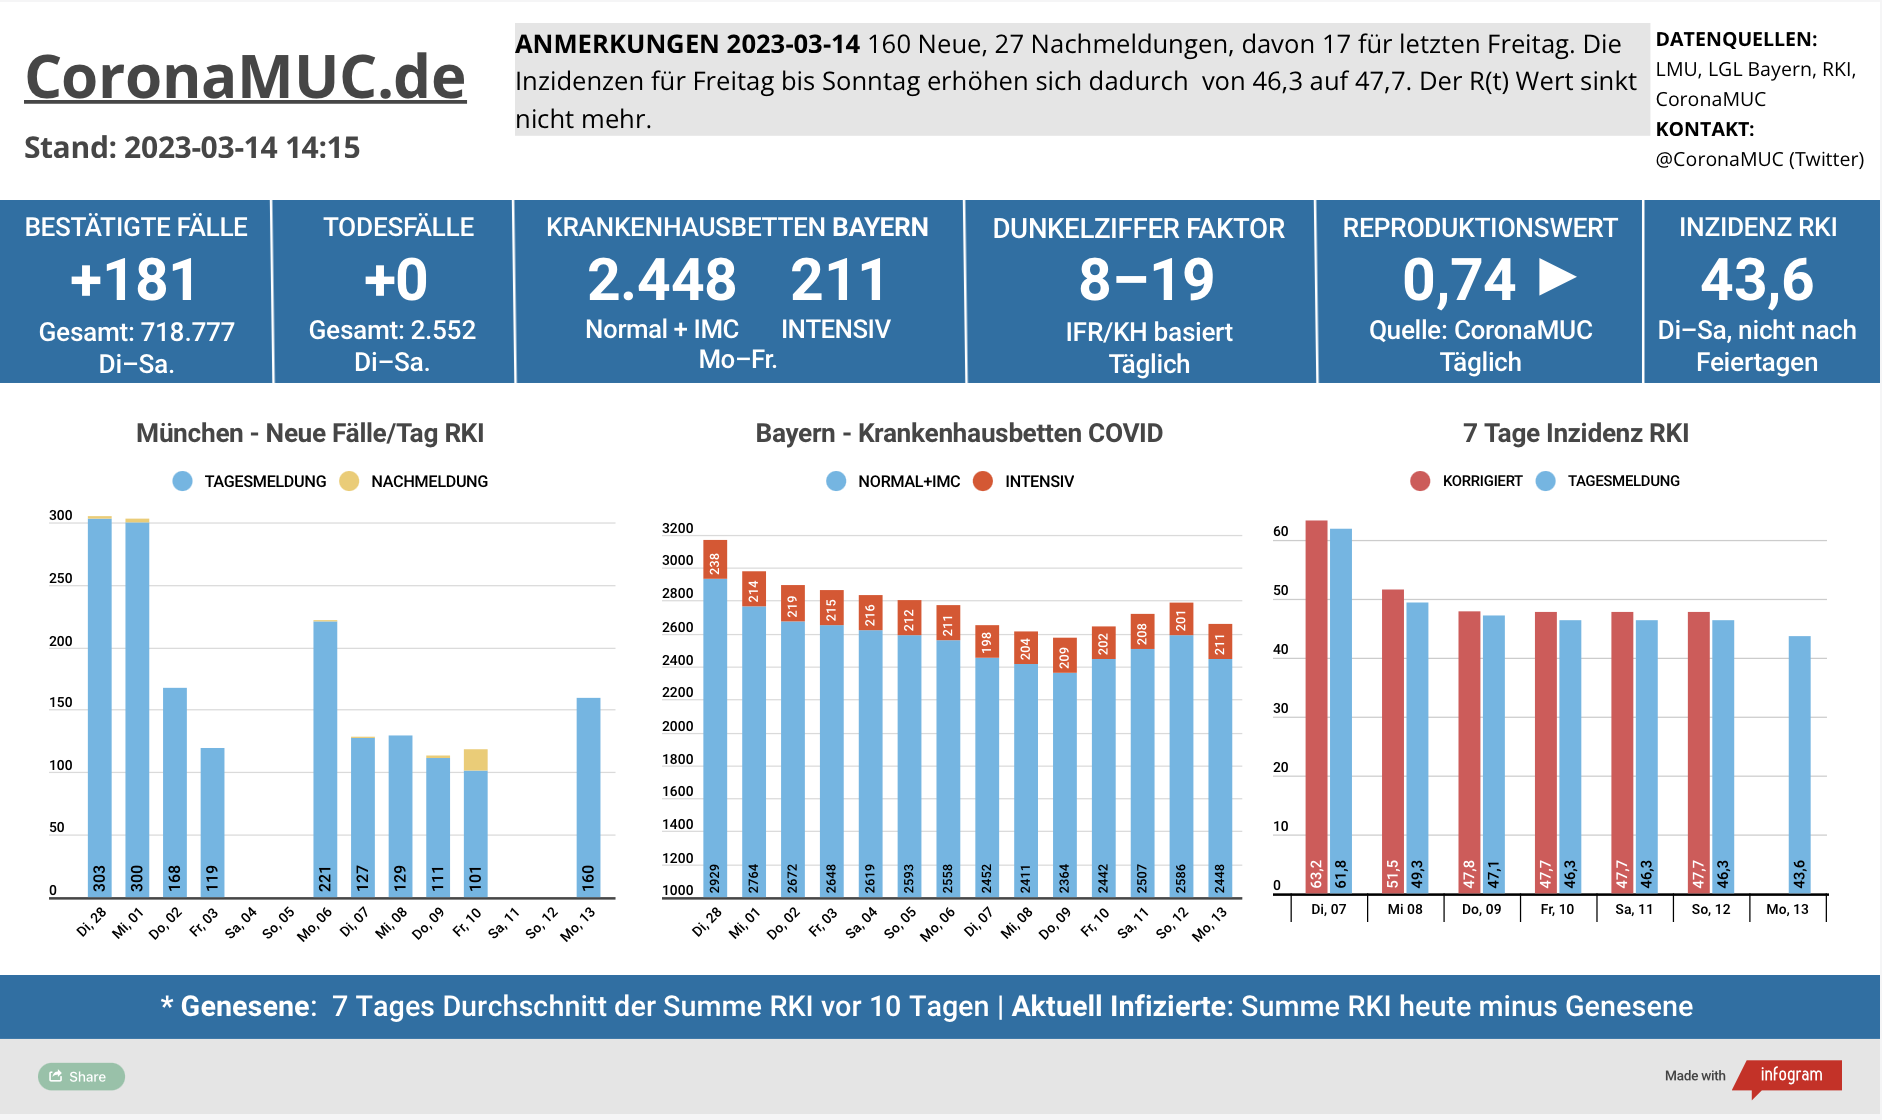 2023-03-14 Dashboard mit den Zahlen für München. Drei Balkengrafiken. Erste zeigt Neu- und Nachmeldungen, niedriger als in der Vorwoche. Der R(t) Wert ist seit 17 Tagen wieder unter 1, sinkt aber nicht mehr. Zweite zeigt Krankenhausbetten in Bayern, die wieder etwas steigen. Dritte zeigt Inzidenz, die zwar stabil unter 100 liegt aber wegen mangelnder PCR Tests wenig aussagekräftig ist.